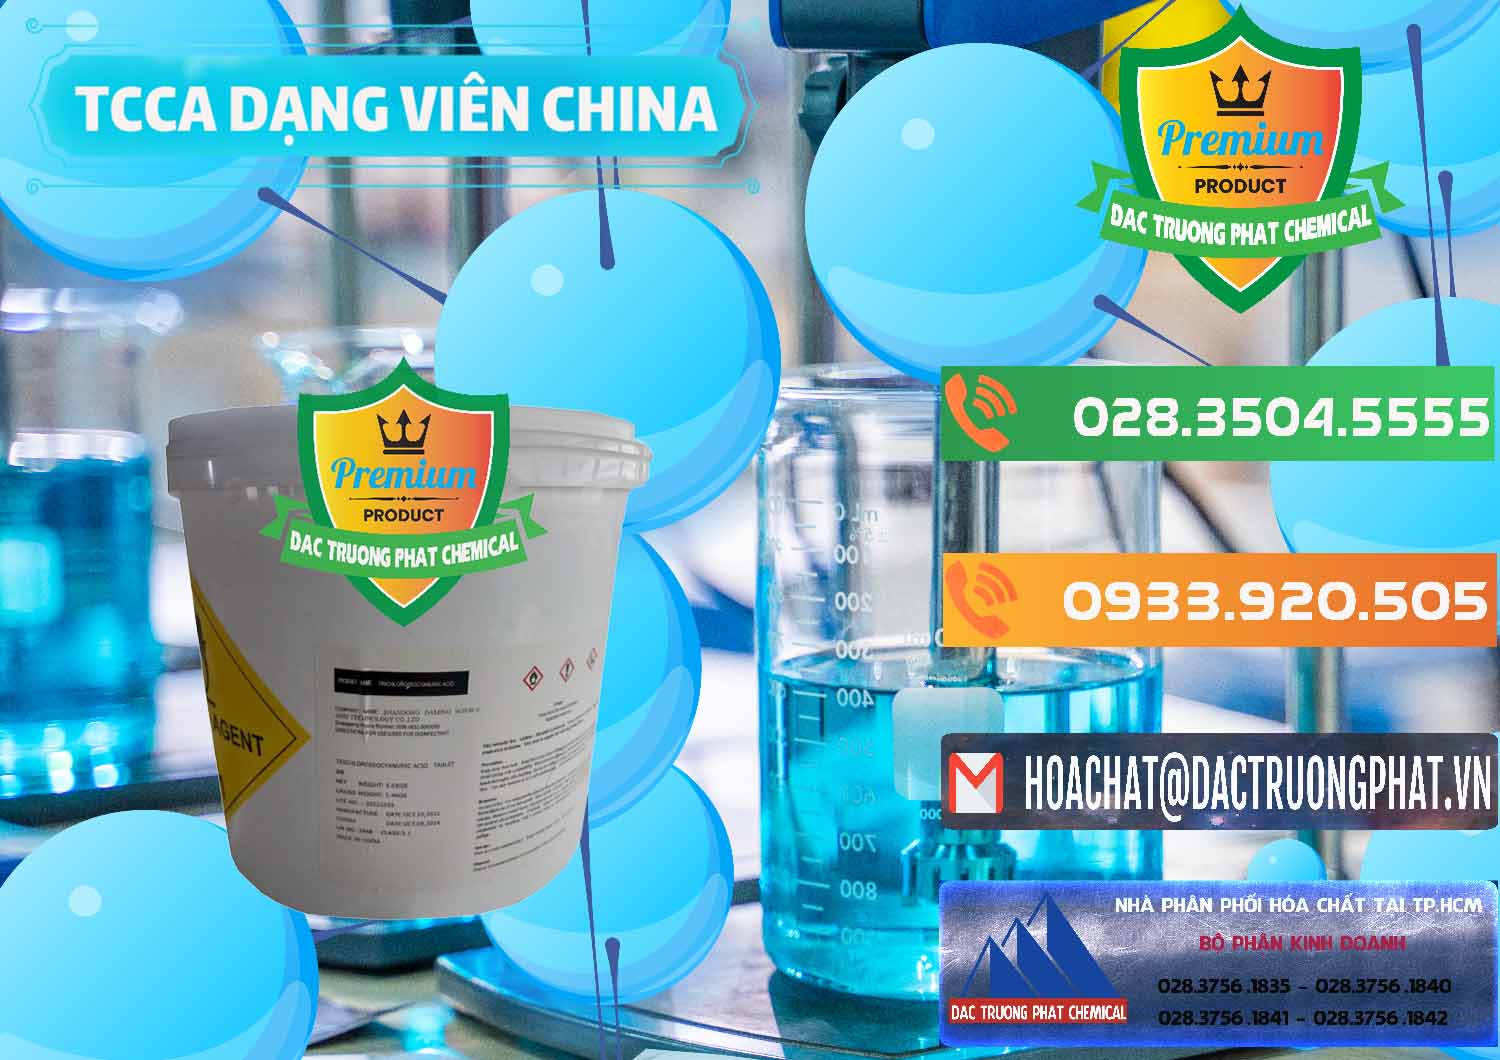 Nơi kinh doanh _ bán TCCA - Acid Trichloroisocyanuric Dạng Viên Thùng 5kg Trung Quốc China - 0379 - Công ty phân phối ( nhập khẩu ) hóa chất tại TP.HCM - hoachatxulynuoc.com.vn